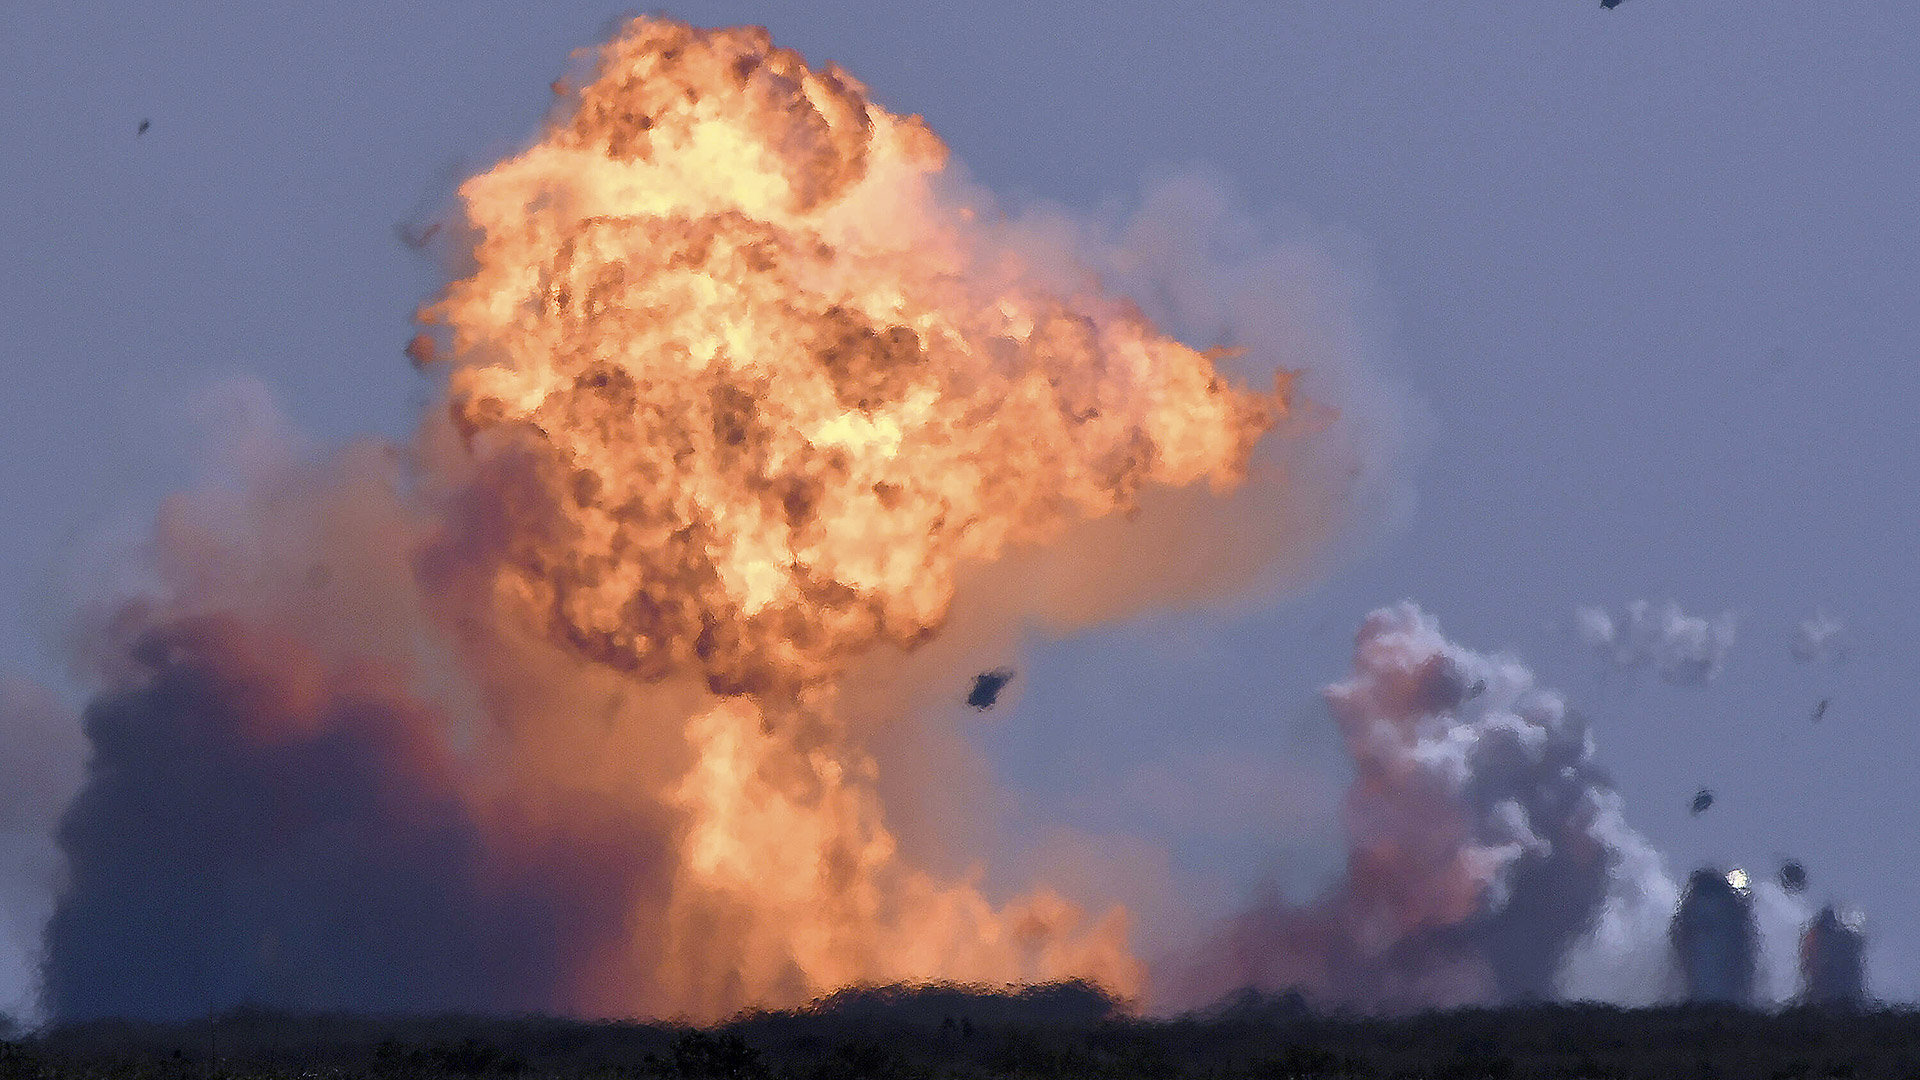 SpaceX Rakete explodiert nach Testflug in Texas bei Landung | 